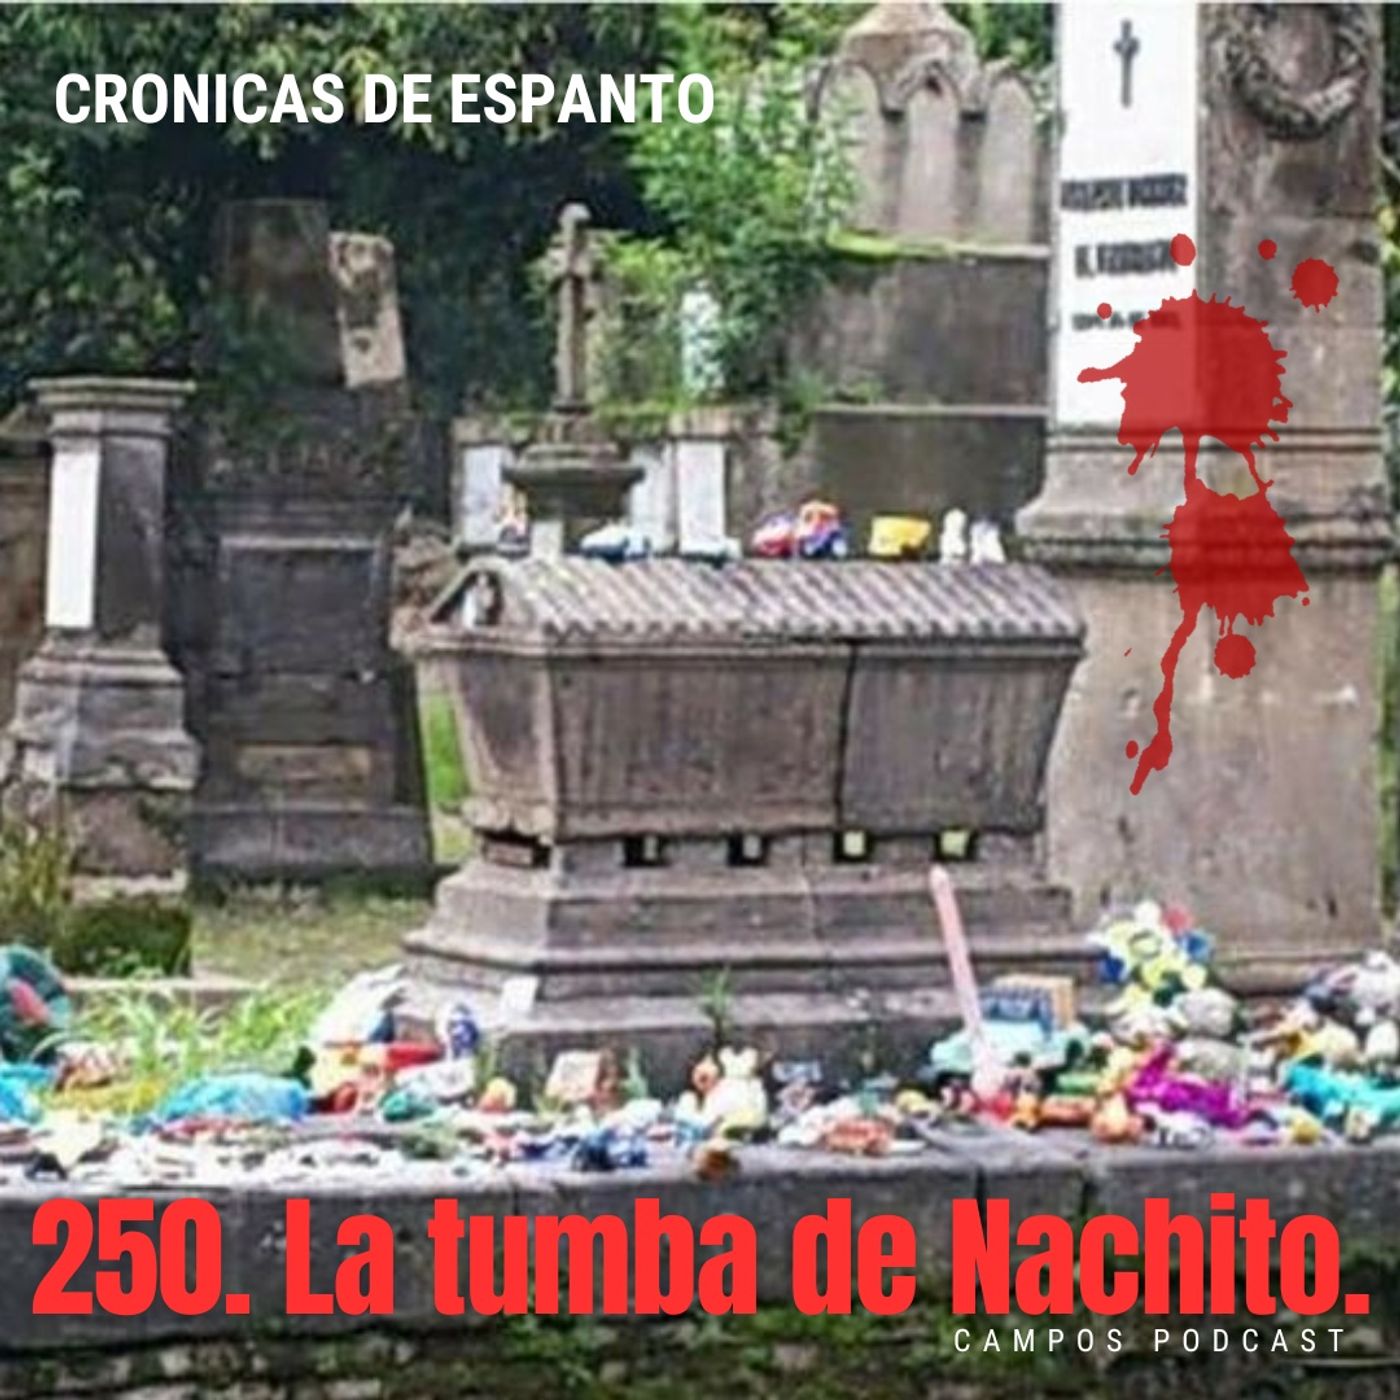 250. La tumba de Nachito.